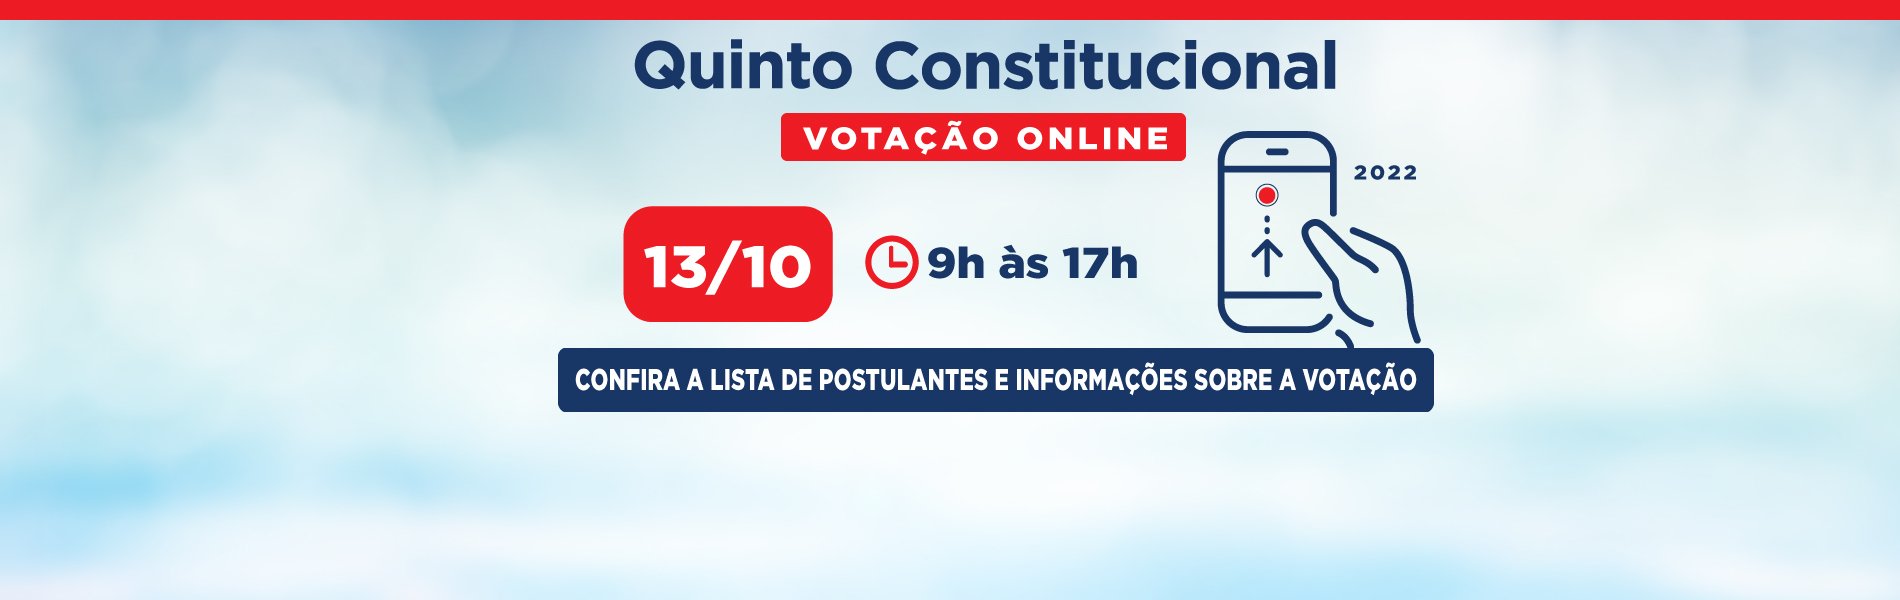 [Quinto Constitucional 2022: confira a lista de postulantes e informações sobre a votação]